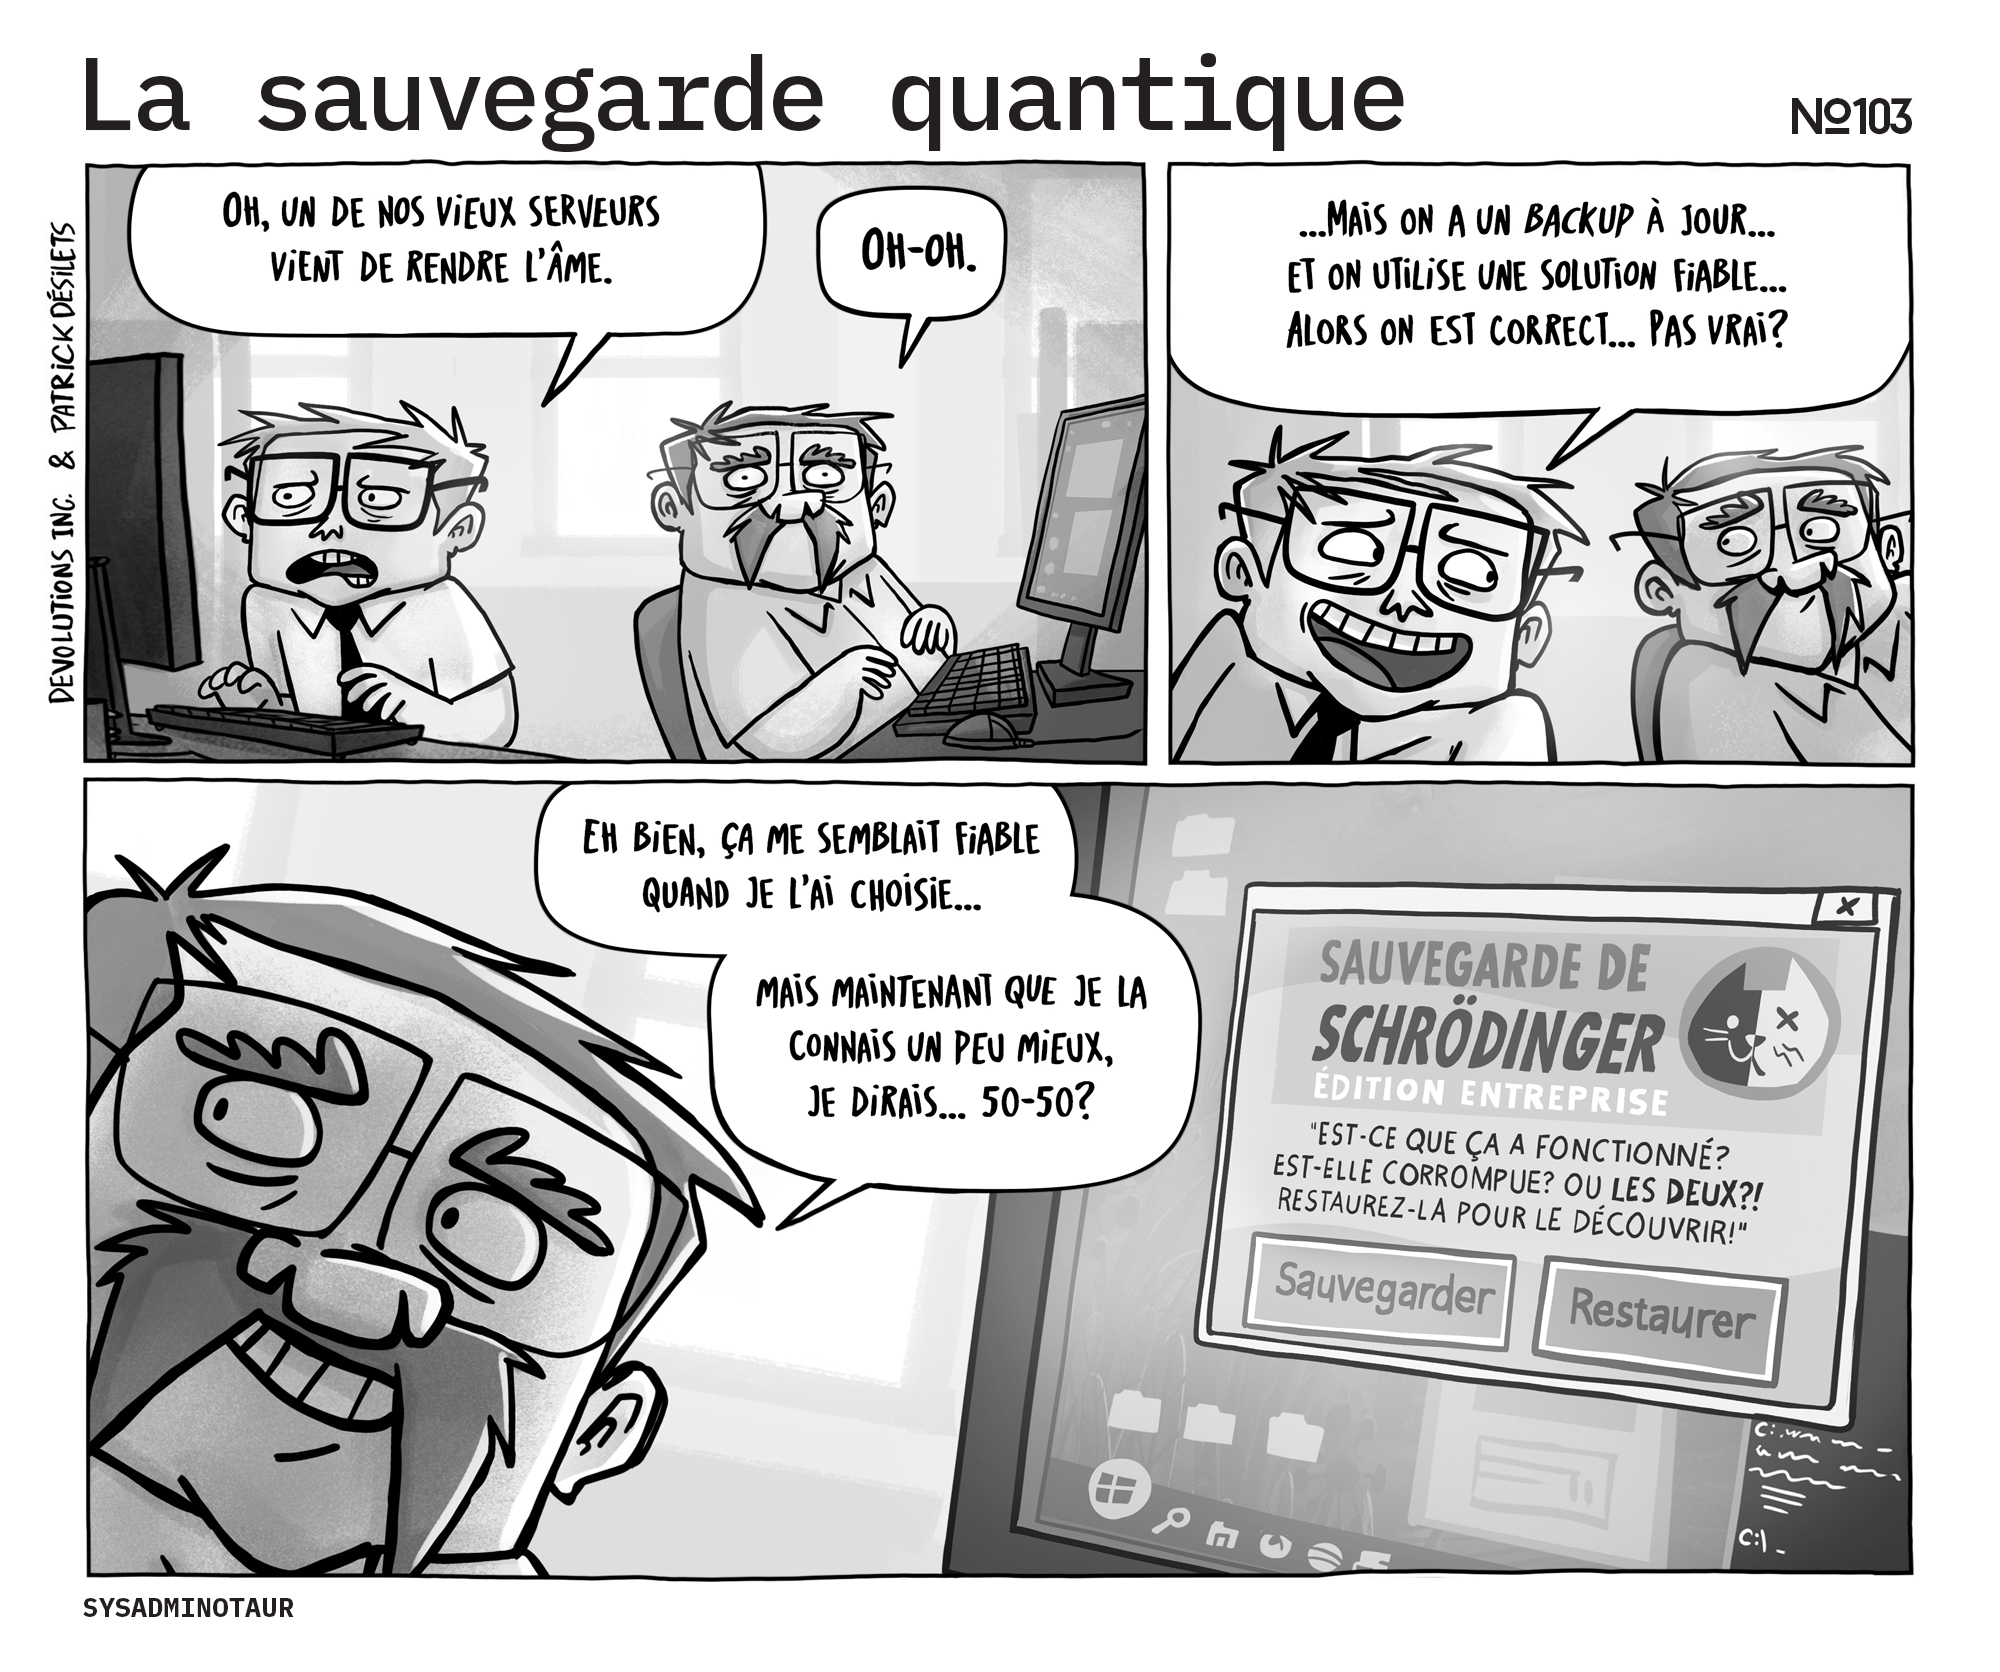 Sysadminotaur #103 : La sauvegarde quantique